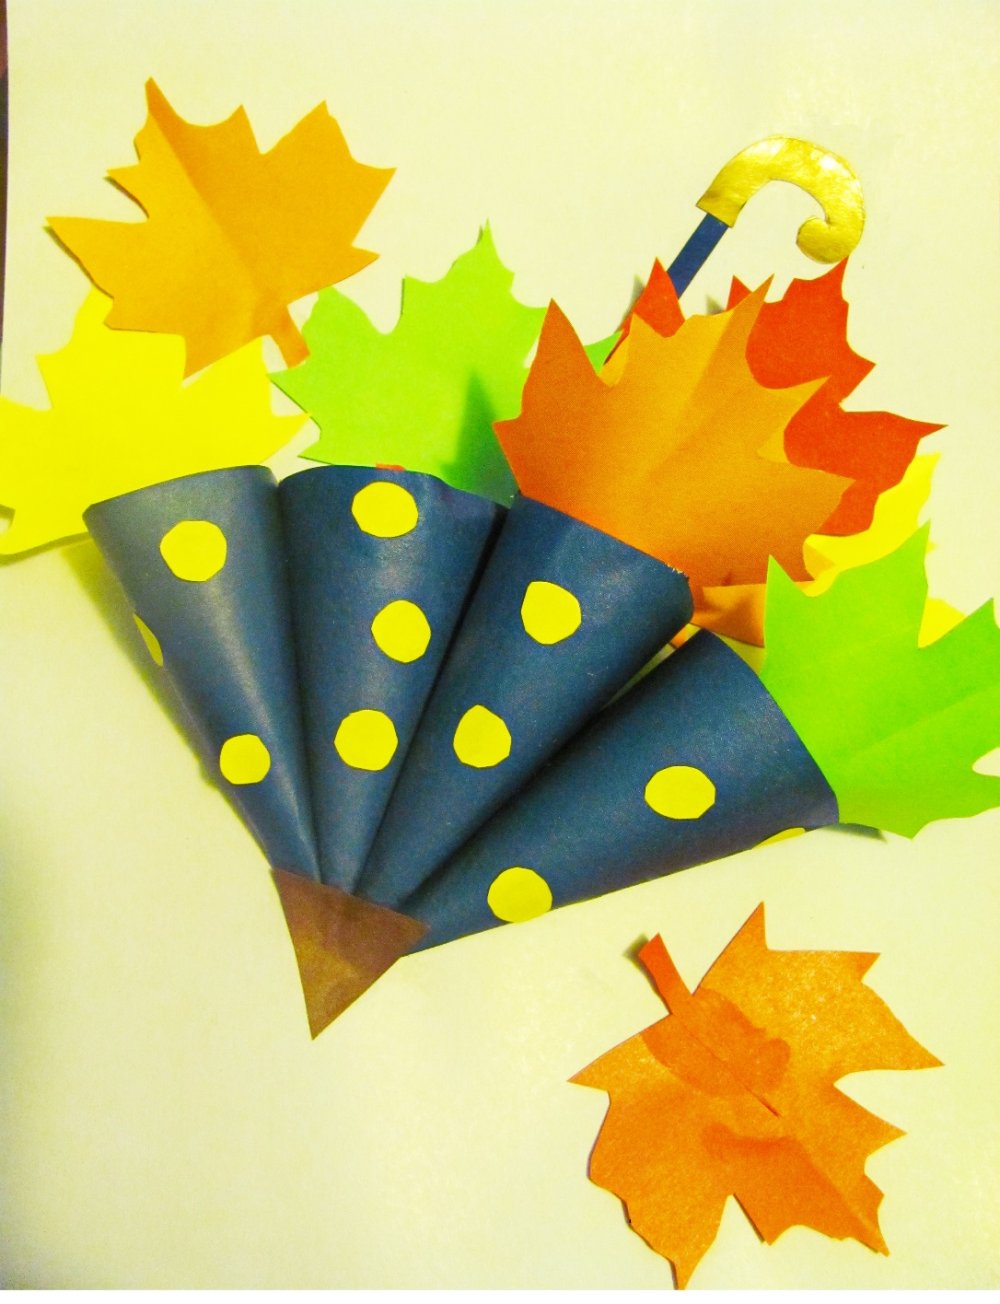 Поделка зонтик из цветной бумаги